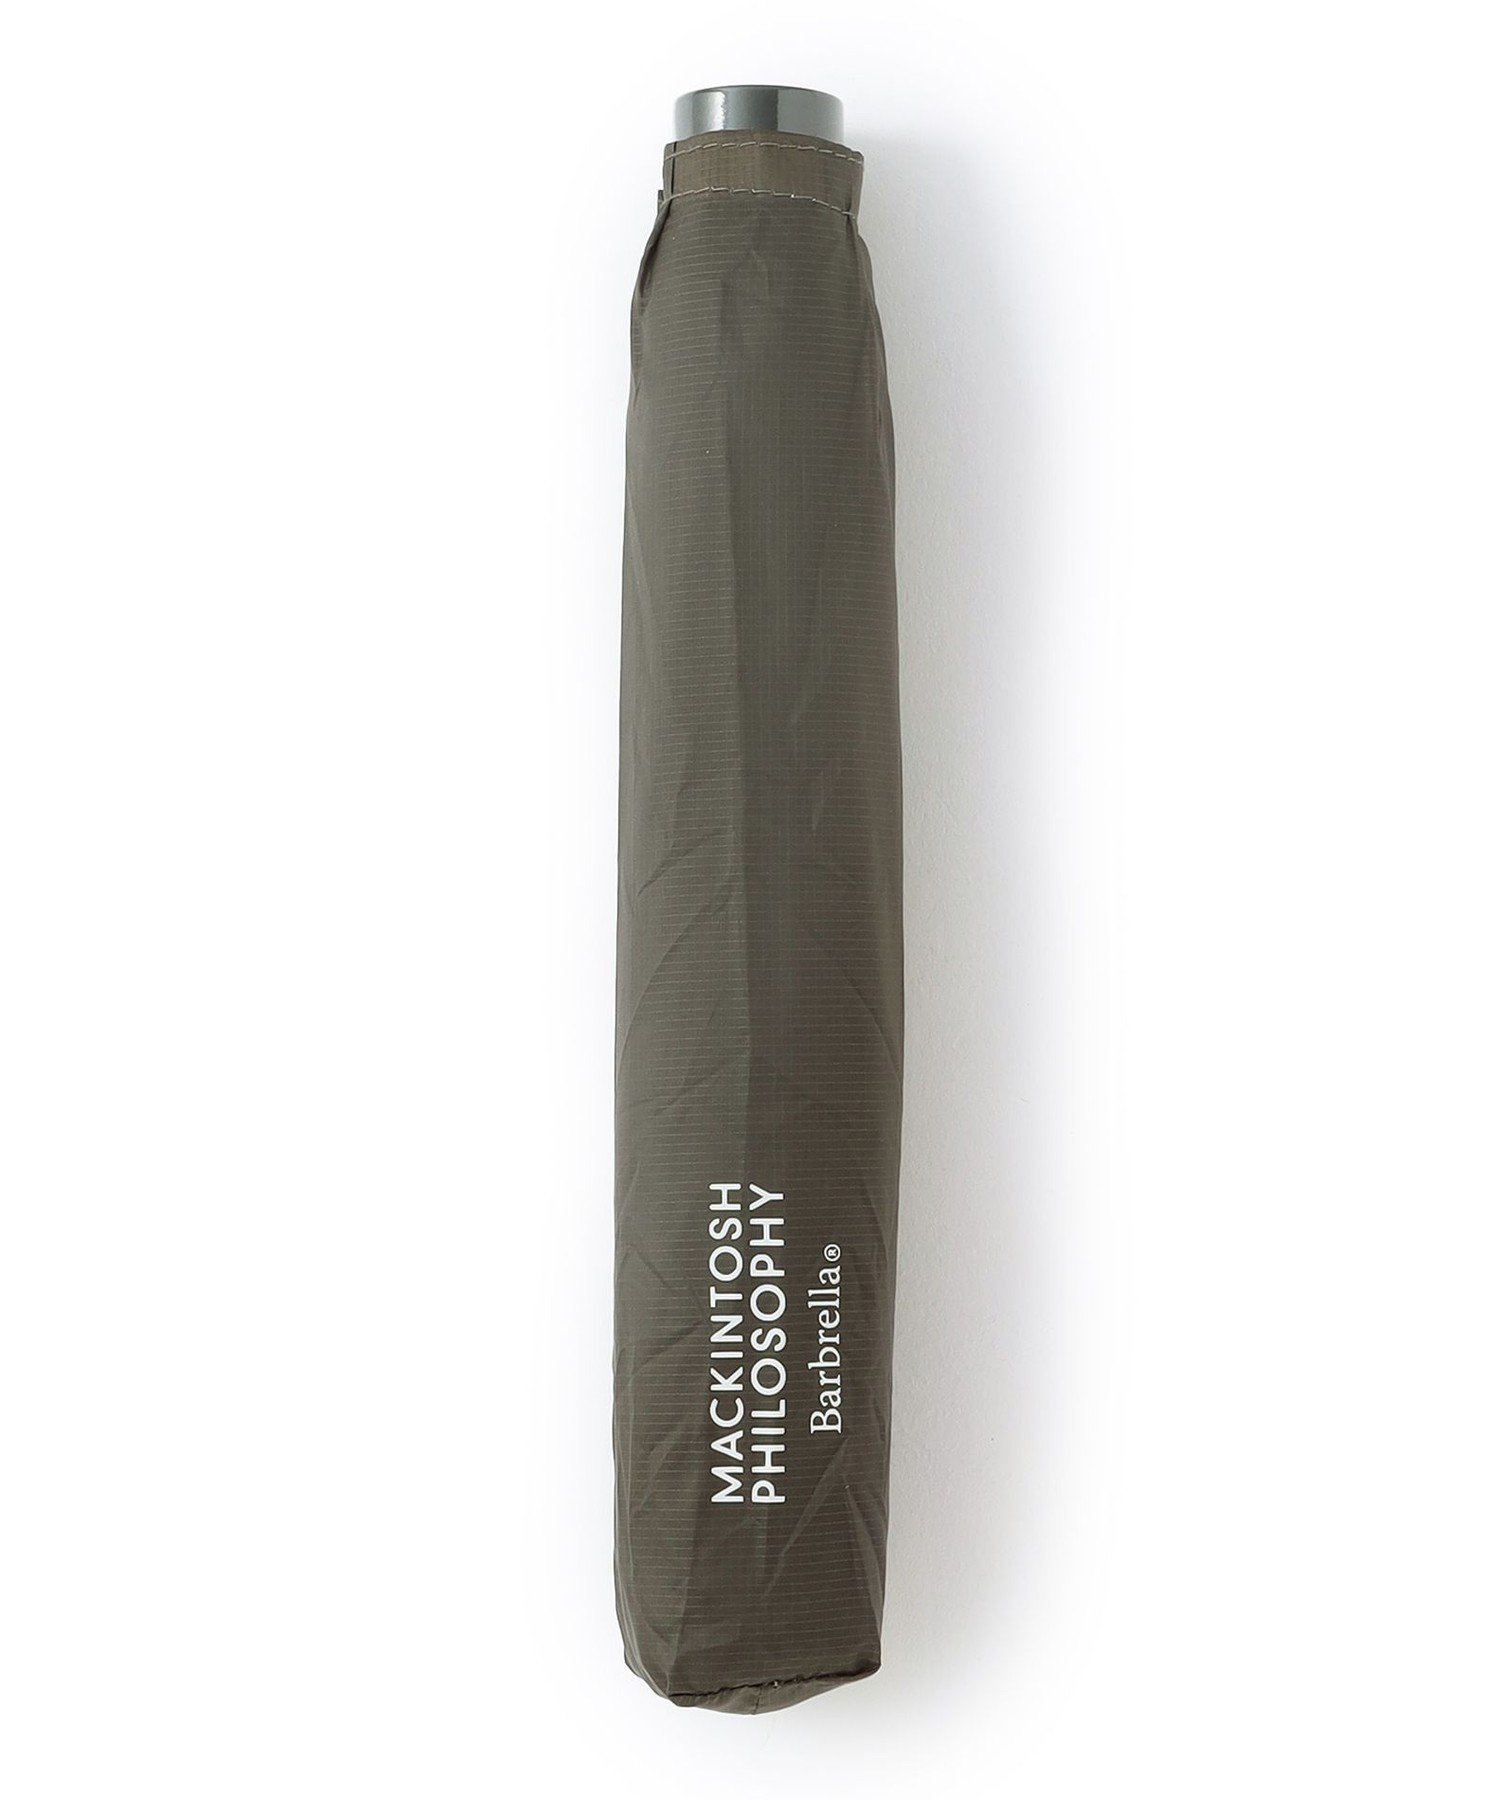 MACKINTOSH PHILOSOPHY（マッキントッシュ フィロソフィー）【Barbrella(R)】 バーブレラ60cm 無地シンプルな無地が使いやすい軽量折りたたみ傘親骨の長さが60cmの折りたたみ傘ながら、傘の重量が約120g。男性も使いやすいサイズです。この軽さを実現するために、傘の親骨には航空機のボディに使用されるカーボンファイバーを、生地には軽量な10D（デニール）の生地を使用しています。バッグに入れてもストレスを感じない、軽くてコンパクトな折りたたみ傘です。ギフトにもおすすめです。※この商品はサンプルでの撮影を行っています。実際の商品とイメージ、仕様が異なる場合がございます。型番：H1W31010---74-X JV0080【採寸】サイズ全長重量X24.5cm125g商品のサイズについて【商品詳細】MADE IN CHINAサイズ：X※画面上と実物では多少色具合が異なって見える場合もございます。ご了承ください。商品のカラーについて 【予約商品について】 ※「先行予約販売中」「予約販売中」をご注文の際は予約商品についてをご確認ください。MACKINTOSH PHILOSOPHY（マッキントッシュ フィロソフィー）【Barbrella(R)】 バーブレラ60cm 無地シンプルな無地が使いやすい軽量折りたたみ傘親骨の長さが60cmの折りたたみ傘ながら、傘の重量が約120g。男性も使いやすいサイズです。この軽さを実現するために、傘の親骨には航空機のボディに使用されるカーボンファイバーを、生地には軽量な10D（デニール）の生地を使用しています。バッグに入れてもストレスを感じない、軽くてコンパクトな折りたたみ傘です。ギフトにもおすすめです。※この商品はサンプルでの撮影を行っています。実際の商品とイメージ、仕様が異なる場合がございます。型番：H1W31010---74-X JV0080【採寸】サイズ全長重量X24.5cm125g商品のサイズについて【商品詳細】MADE IN CHINAサイズ：X※画面上と実物では多少色具合が異なって見える場合もございます。ご了承ください。商品のカラーについて 【予約商品について】 ※「先行予約販売中」「予約販売中」をご注文の際は予約商品についてをご確認ください。■重要なお知らせ※ 当店では、ギフト配送サービス及びラッピングサービスを行っておりません。ご注文者様とお届け先が違う場合でも、タグ（値札）付「納品書 兼 返品連絡票」同梱の状態でお送り致しますのでご了承ください。 ラッピング・ギフト配送について※ 2点以上ご購入の場合、全ての商品が揃い次第一括でのお届けとなります。お届け予定日の異なる商品をお買い上げの場合はご注意下さい。お急ぎの商品がございましたら分けてご購入いただきますようお願い致します。発送について ※ 買い物カートに入れるだけでは在庫確保されませんのでお早めに購入手続きをしてください。当店では在庫を複数サイトで共有しているため、同時にご注文があった場合、売切れとなってしまう事がございます。お手数ですが、ご注文後に当店からお送りする「ご注文内容の確認メール」をご確認ください。ご注文の確定について ※ Rakuten Fashionの商品ページに記載しているメーカー希望小売価格は、楽天市場「商品価格ナビ」に登録されている価格に準じています。 商品の価格についてMACKINTOSH PHILOSOPHYMACKINTOSH PHILOSOPHYの傘・長傘ファッション雑貨ご注文・お届けについて発送ガイドラッピンググッズ3,980円以上送料無料ご利用ガイド